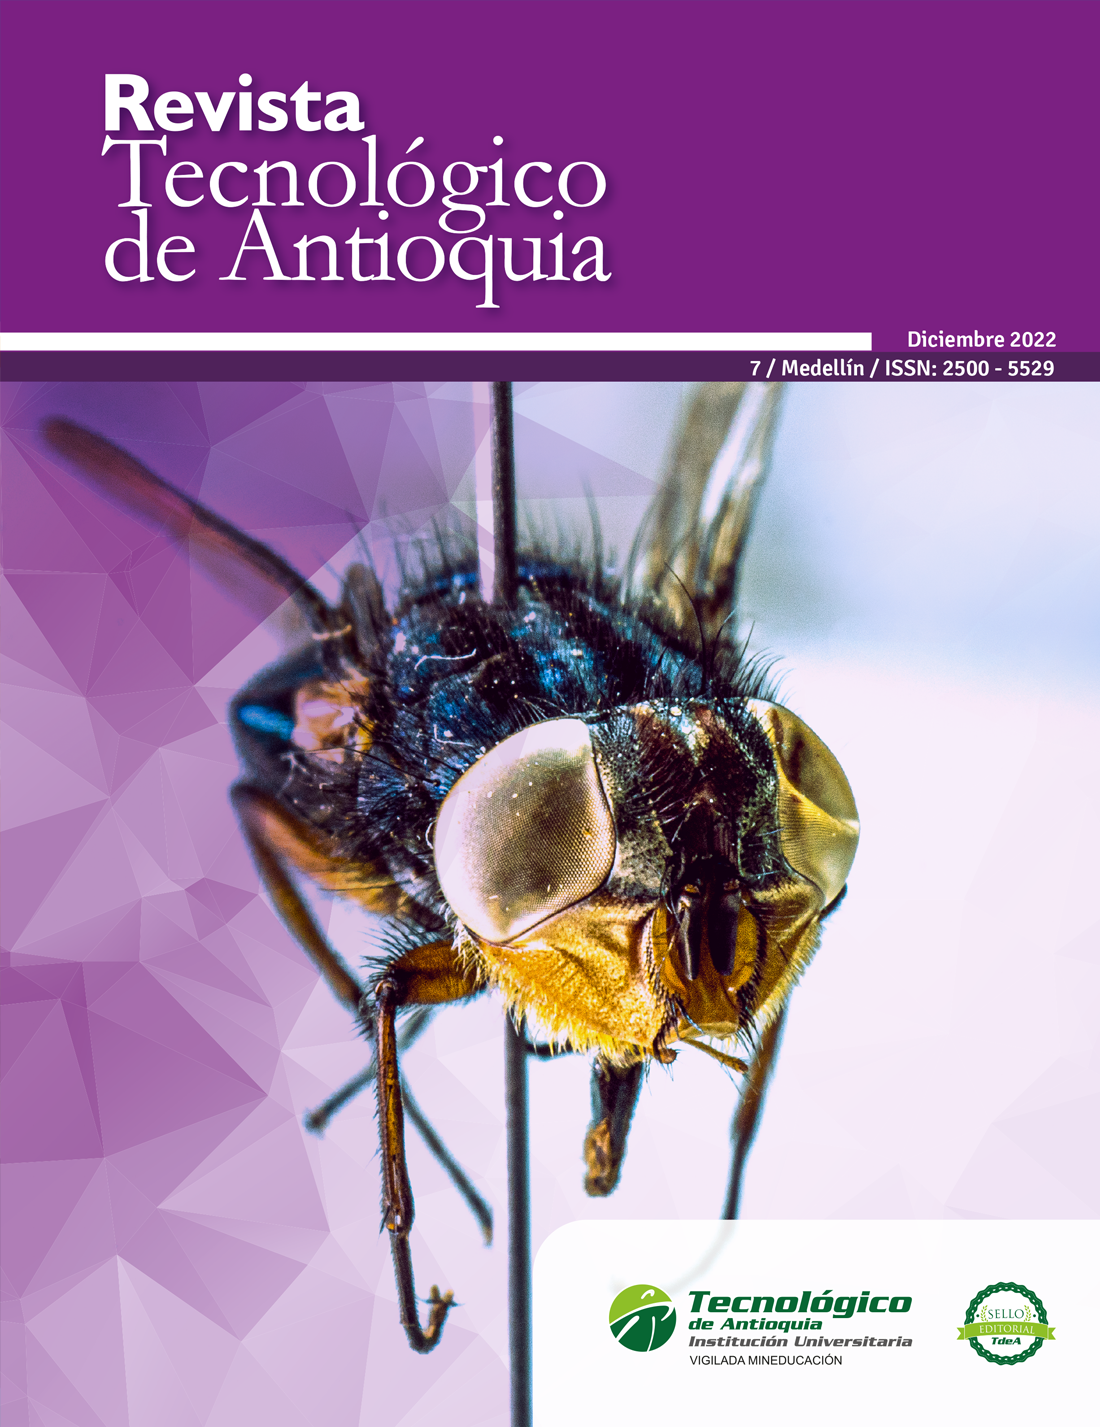 Revista Tecnológico de Antioquia